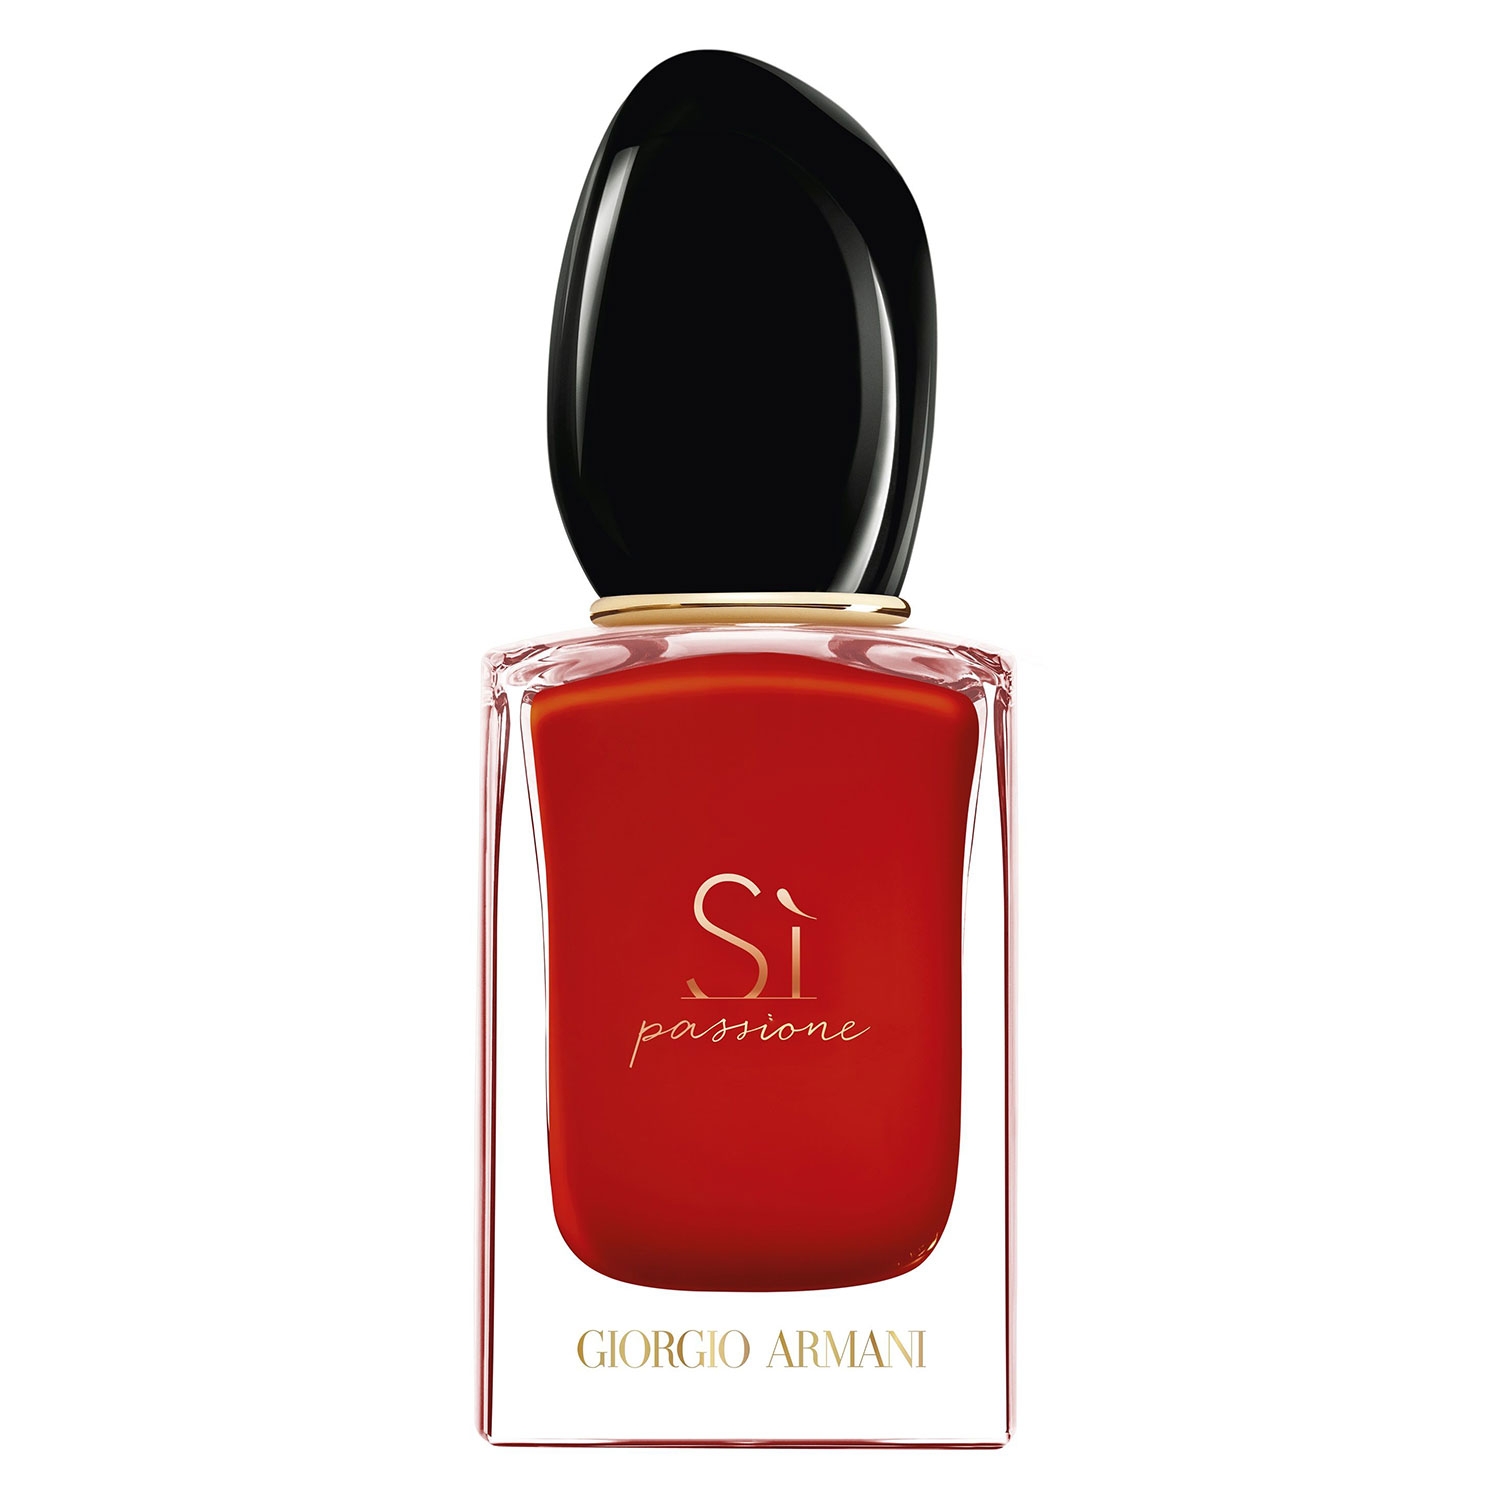 Product image from Sì - Passione Eau de Parfum